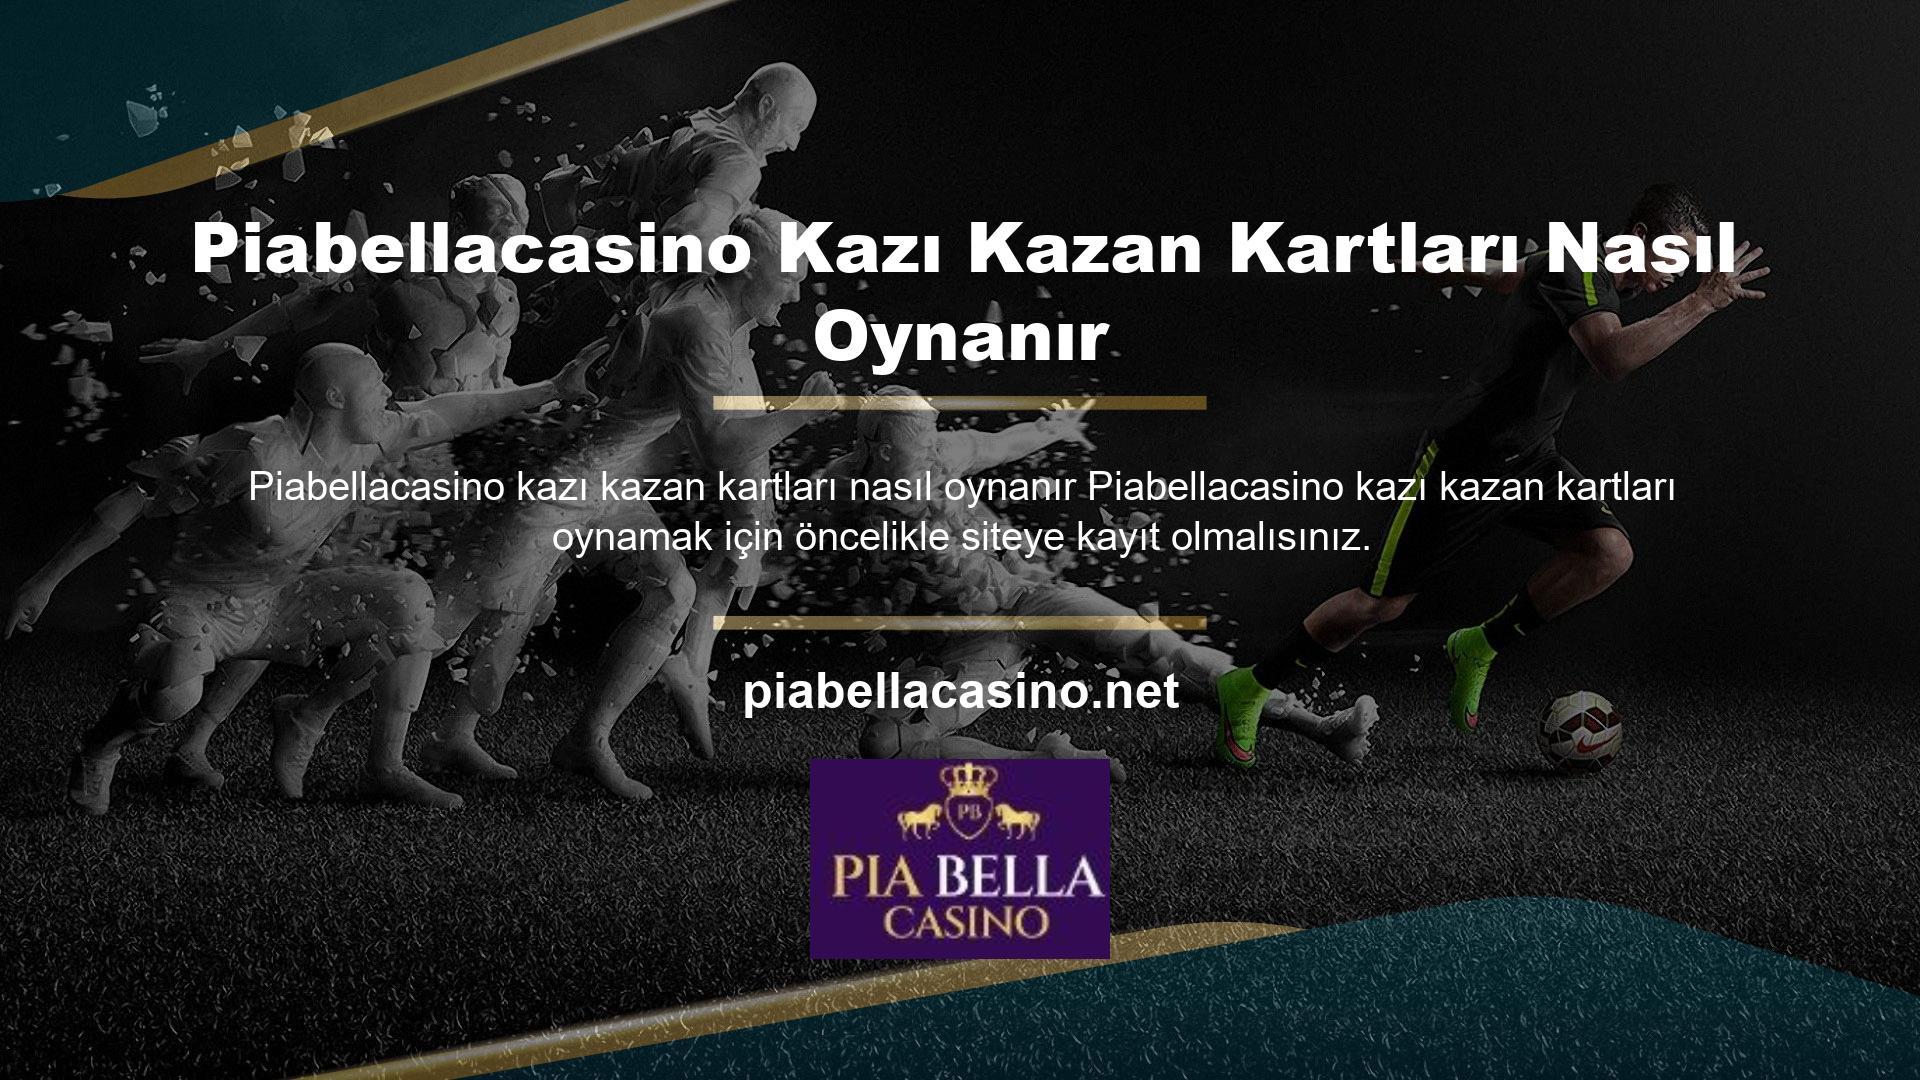 Piabellacasino ana sayfasındaki "Kayıt Ol" bölümünden üyelik oluşturan herkes oyunu oynamaya hak kazanır